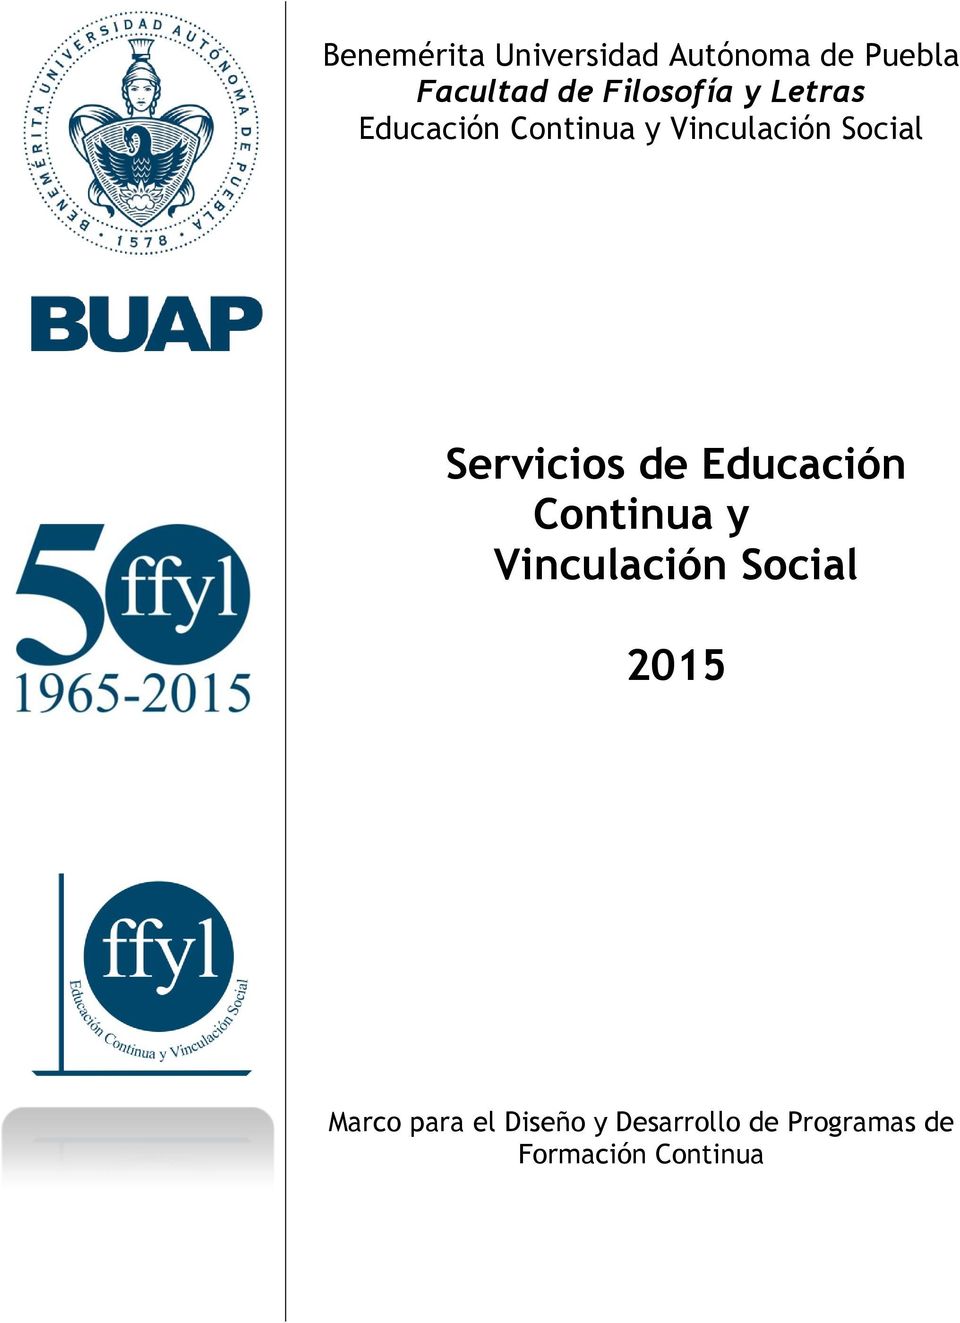 Servicios de Educación Continua y Vinculación Social 2015